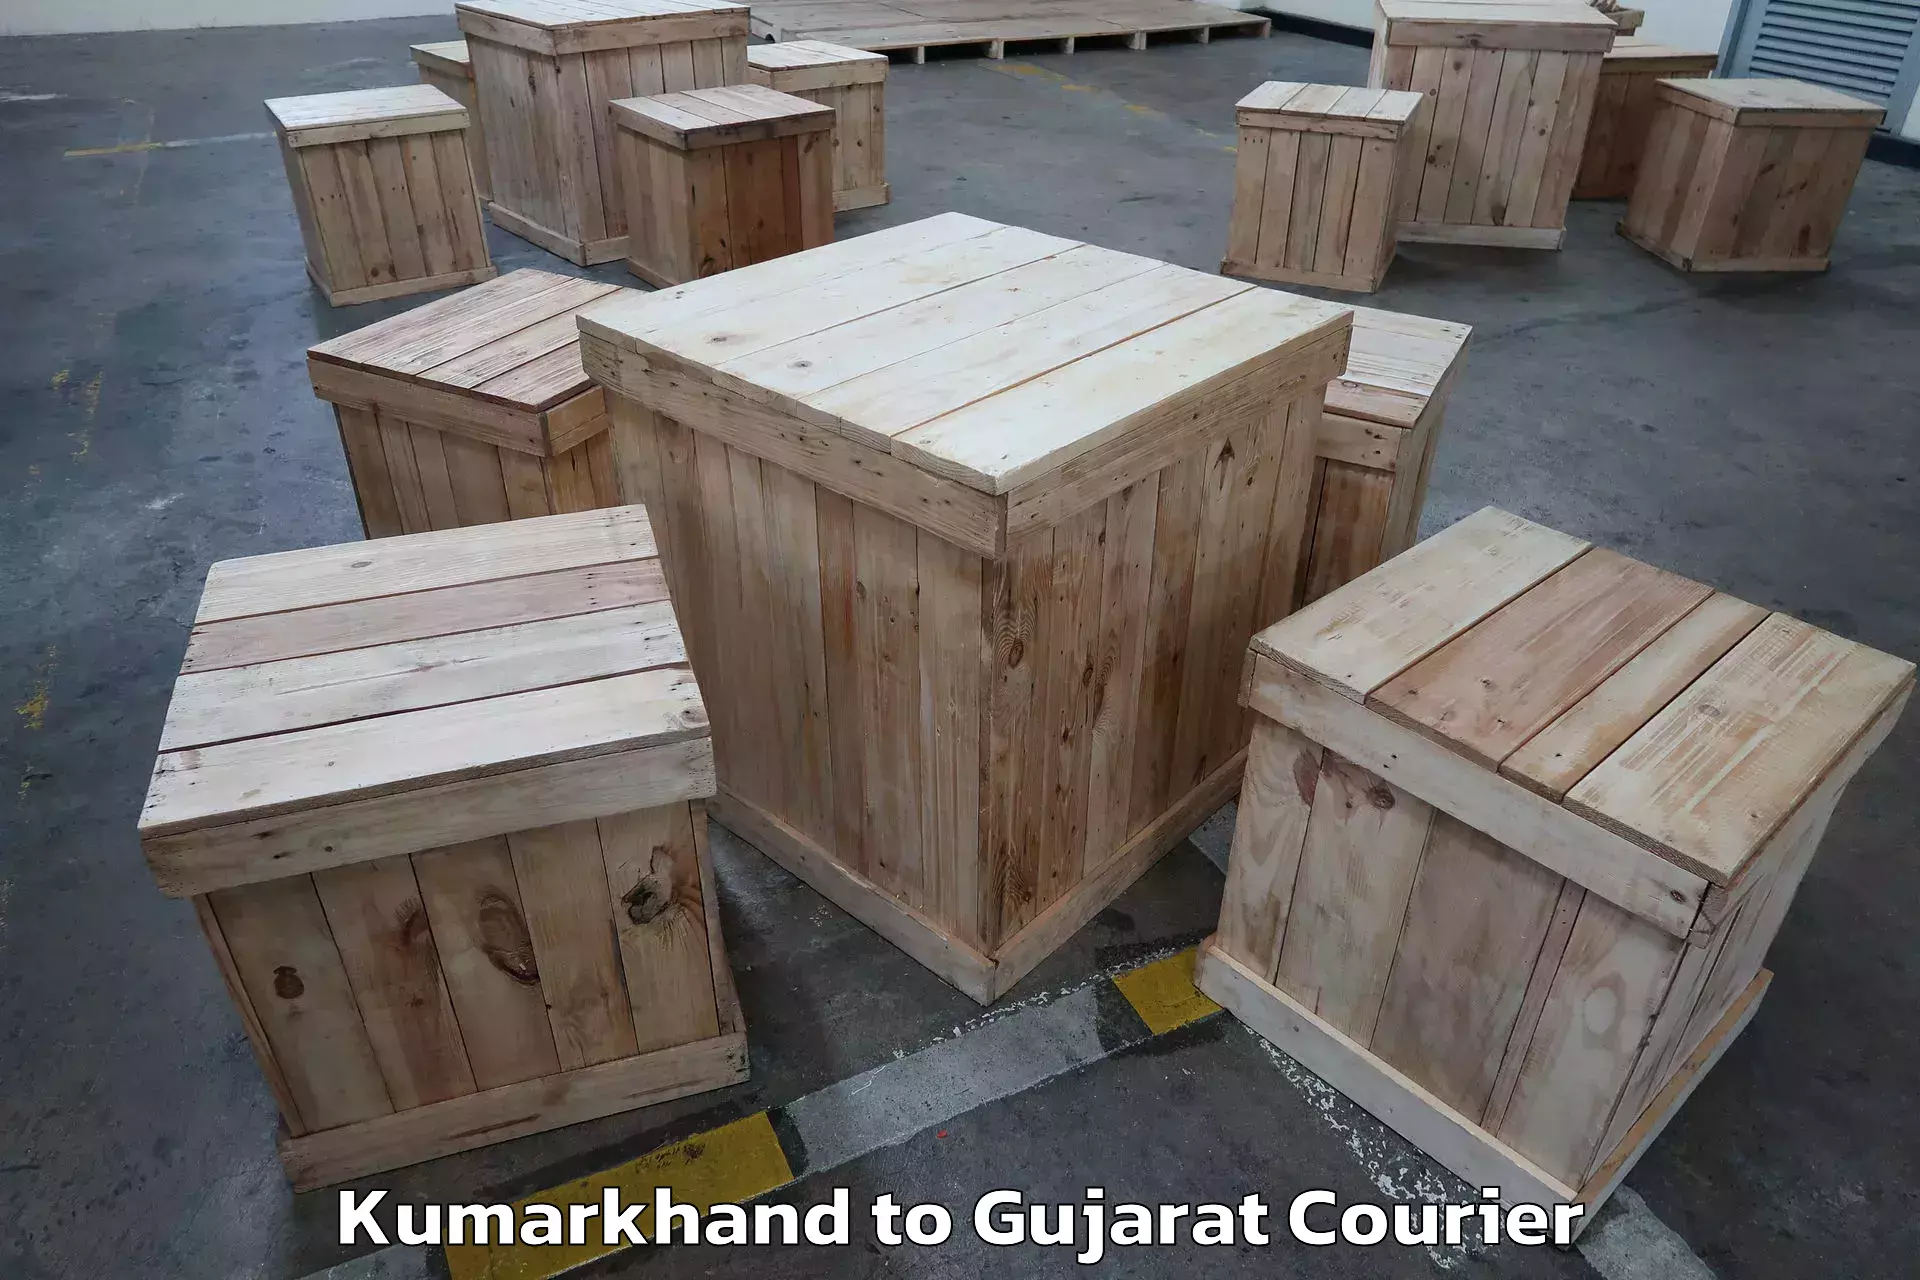 Home goods moving company Kumarkhand to Lunawada